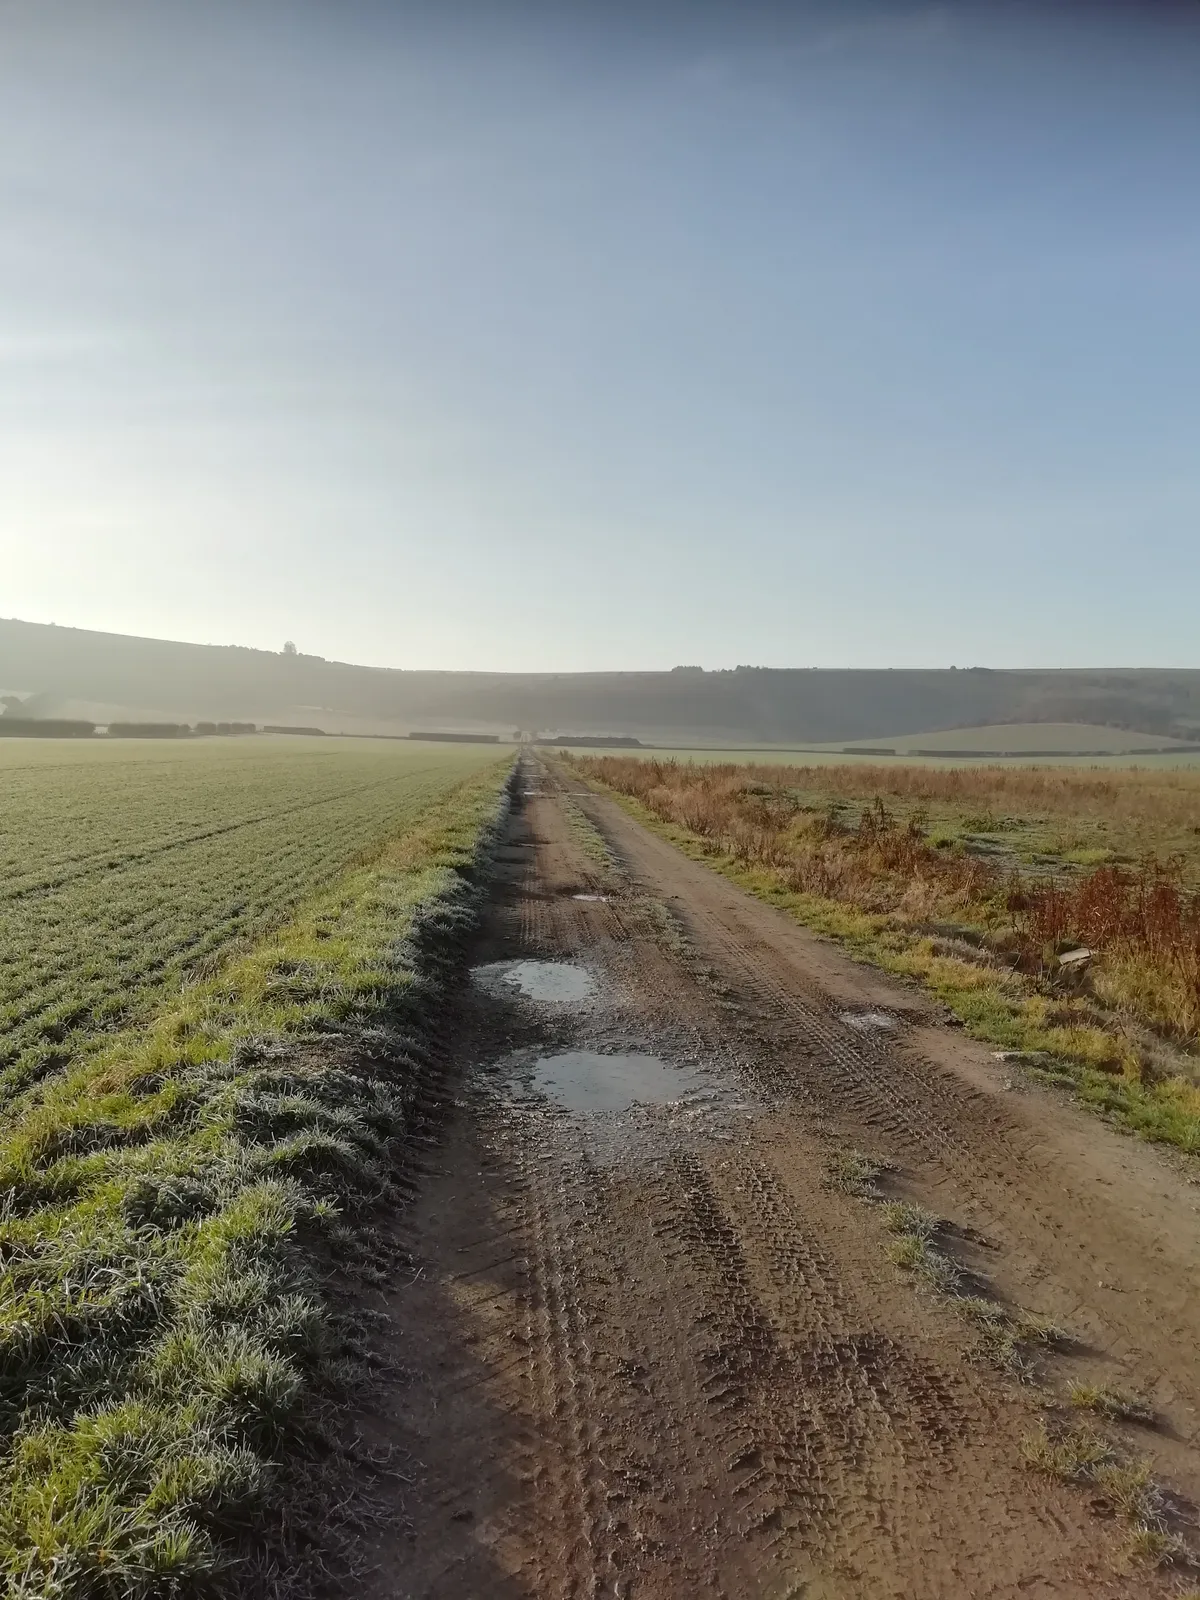 Lane through a field